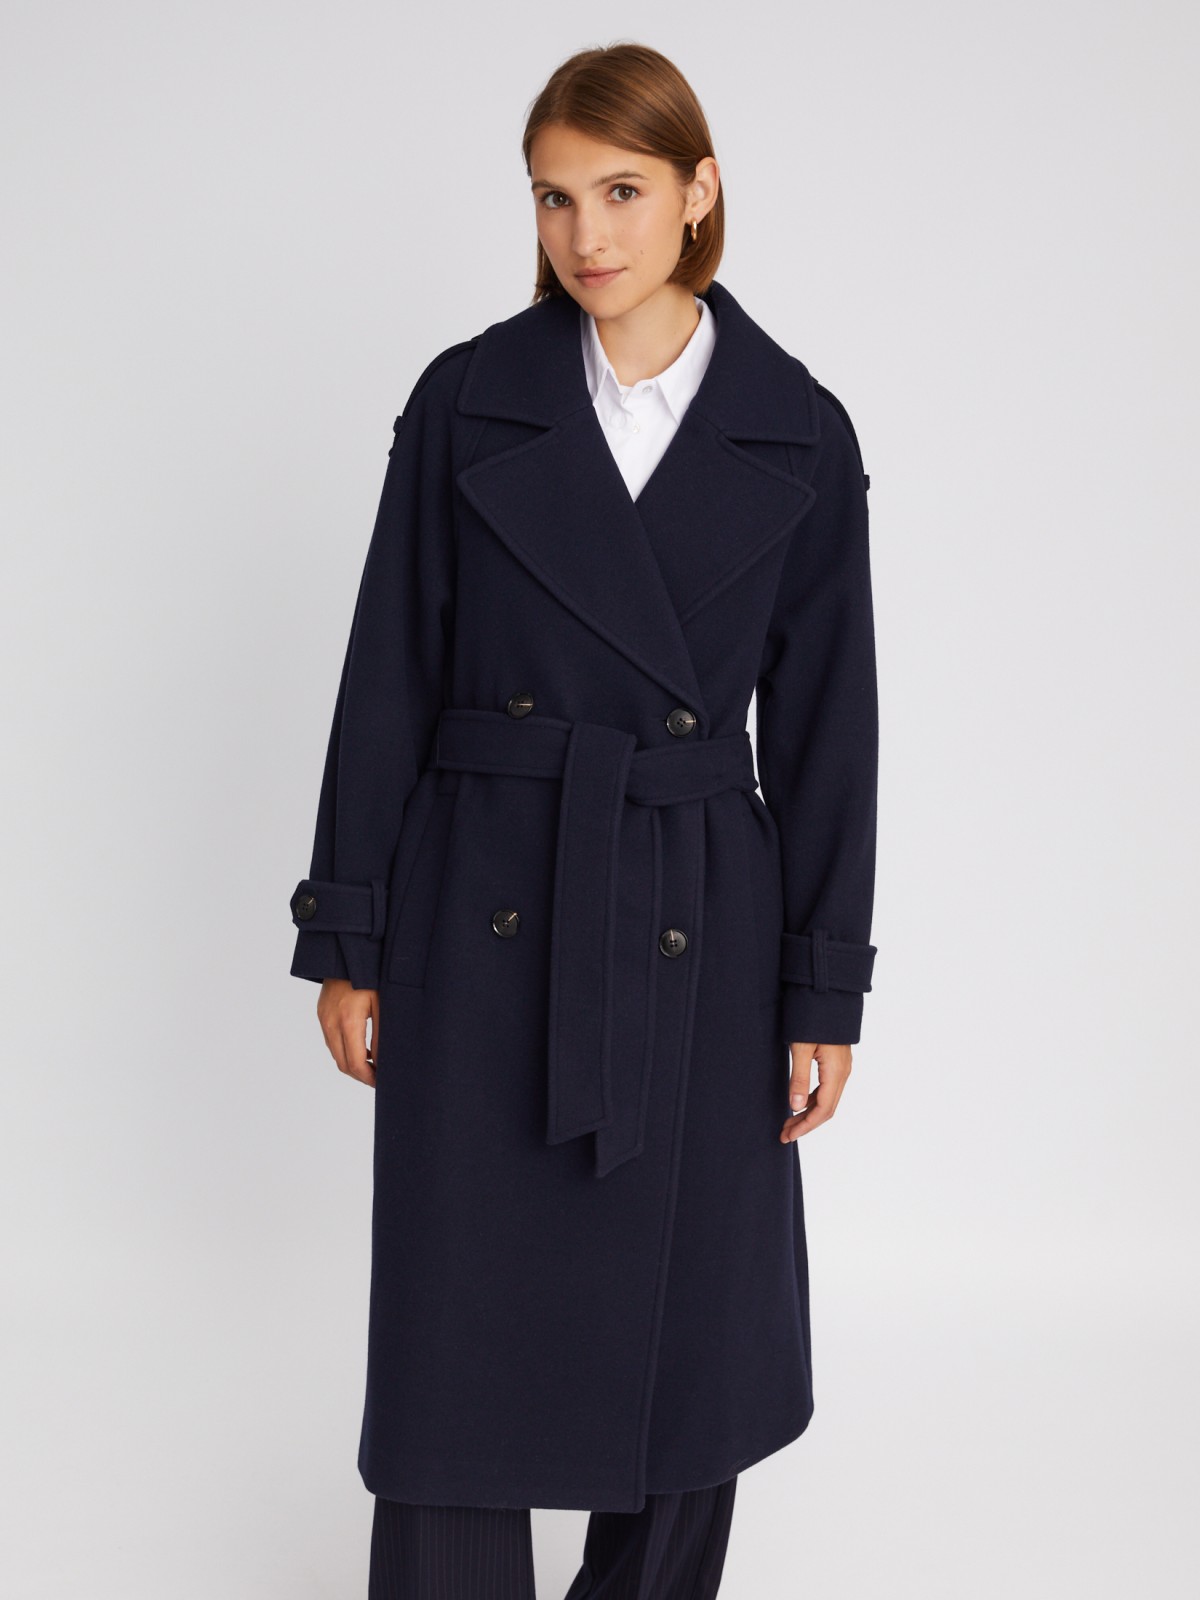 Длинное пальто-тренч без утеплителя на пуговицах с рукавами реглан и поясом zolla 023335866114, цвет синий, размер S - фото 4